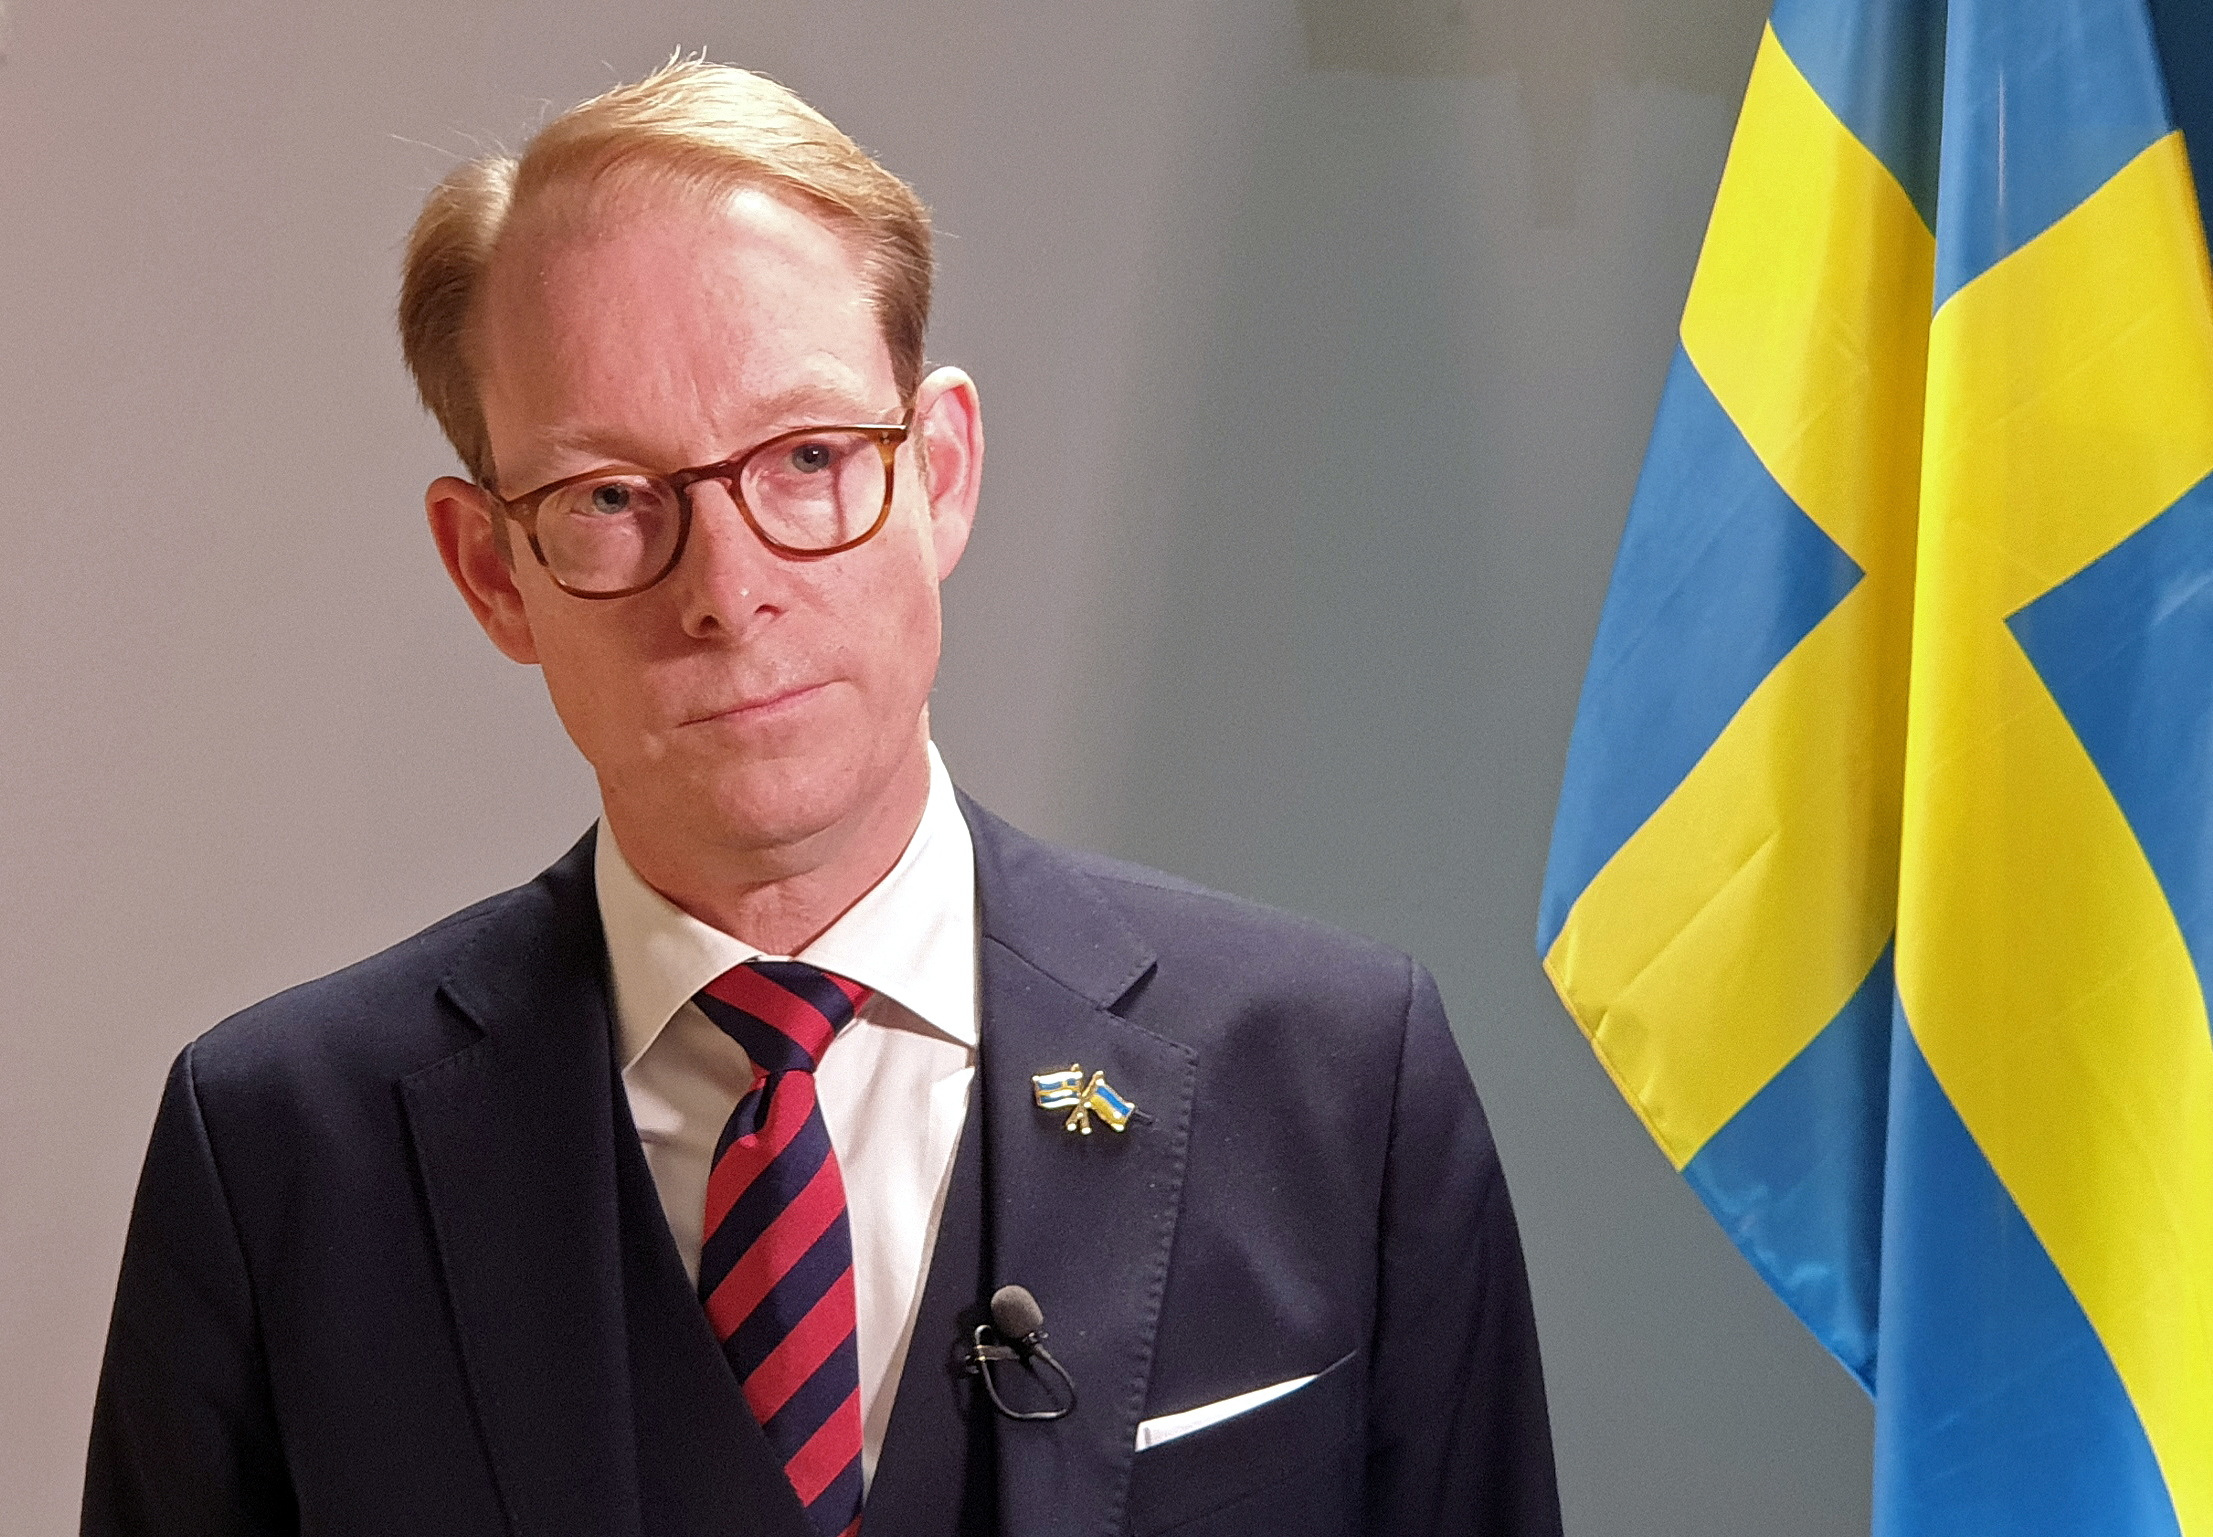 Стокгольм: новый закон о борьбе с терроризмом преодолеет возражения Анкары против членства Швеции в НАТО